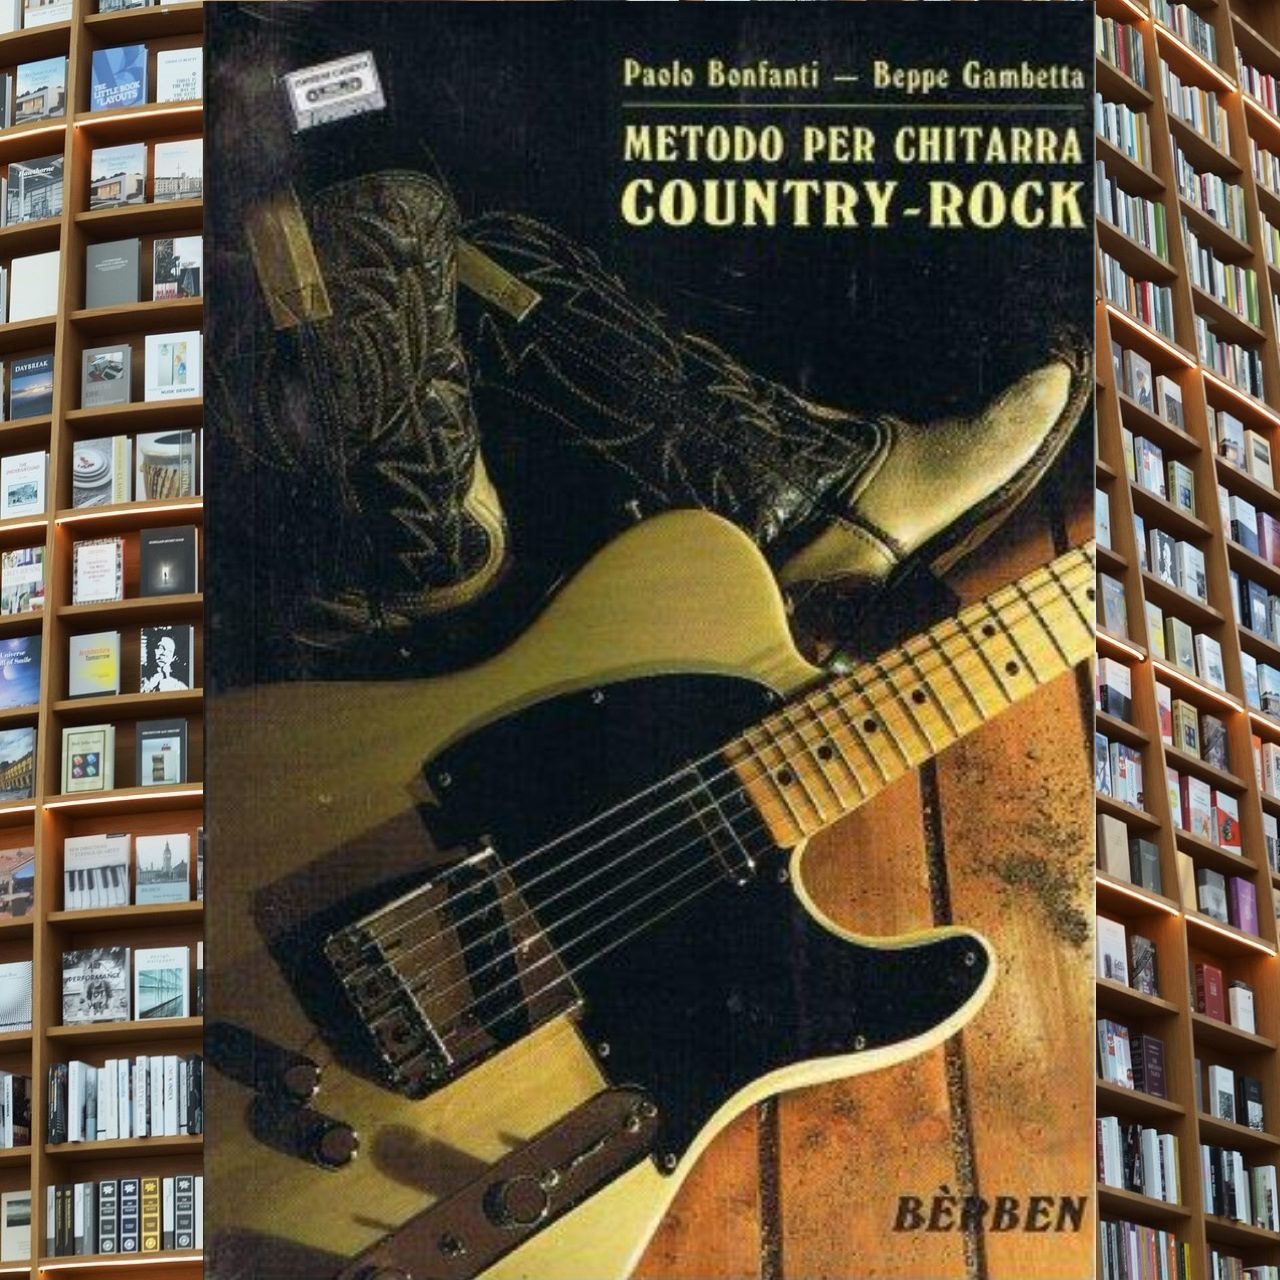 Paolo Bonfanti Beppe Gambetta – Metodo per chitarra Country-Rock cover book